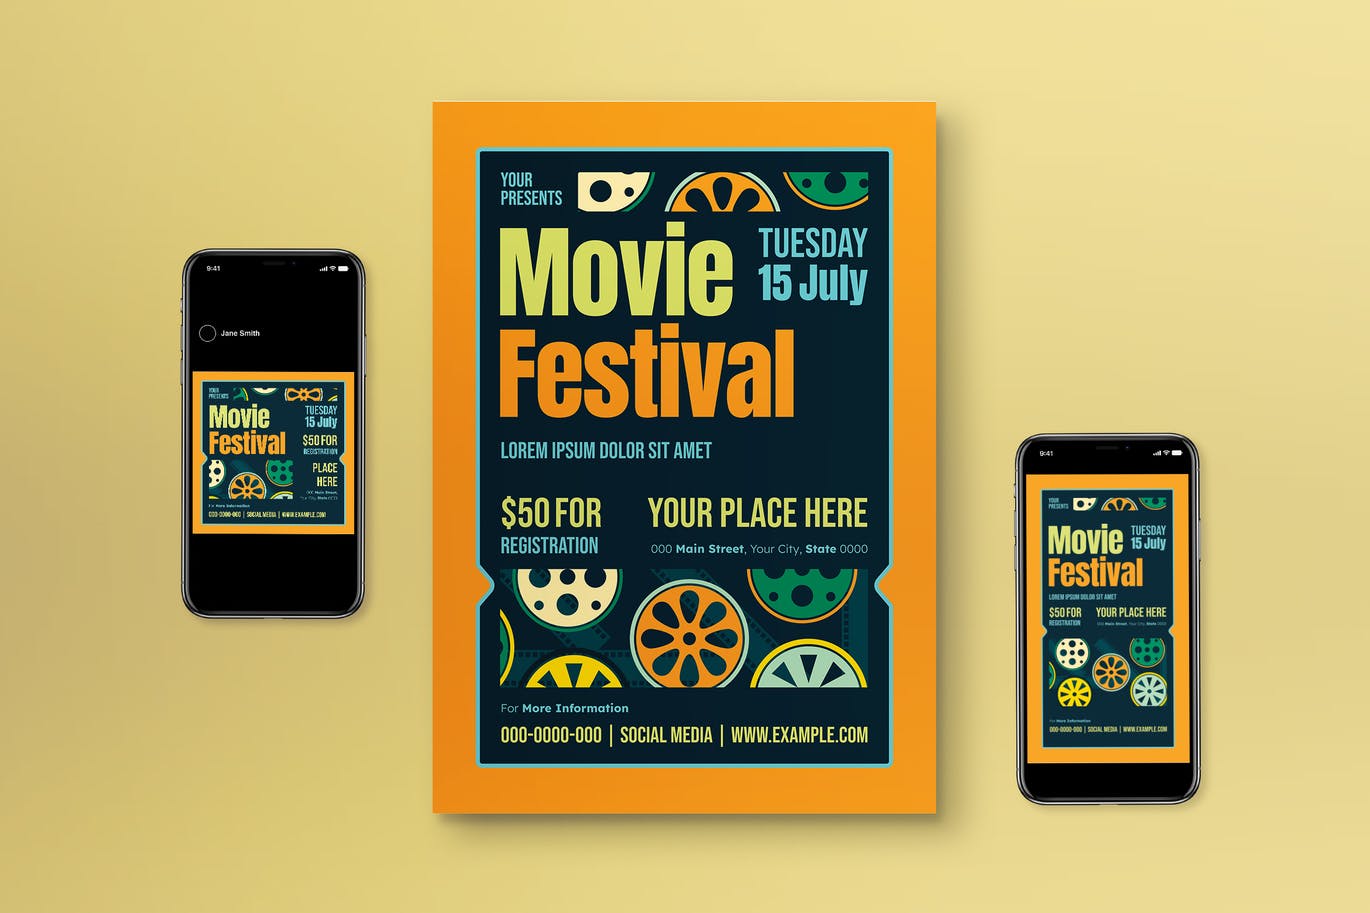 电影节海报模板下载 Movie Festival Flyer Set 设计素材 第1张